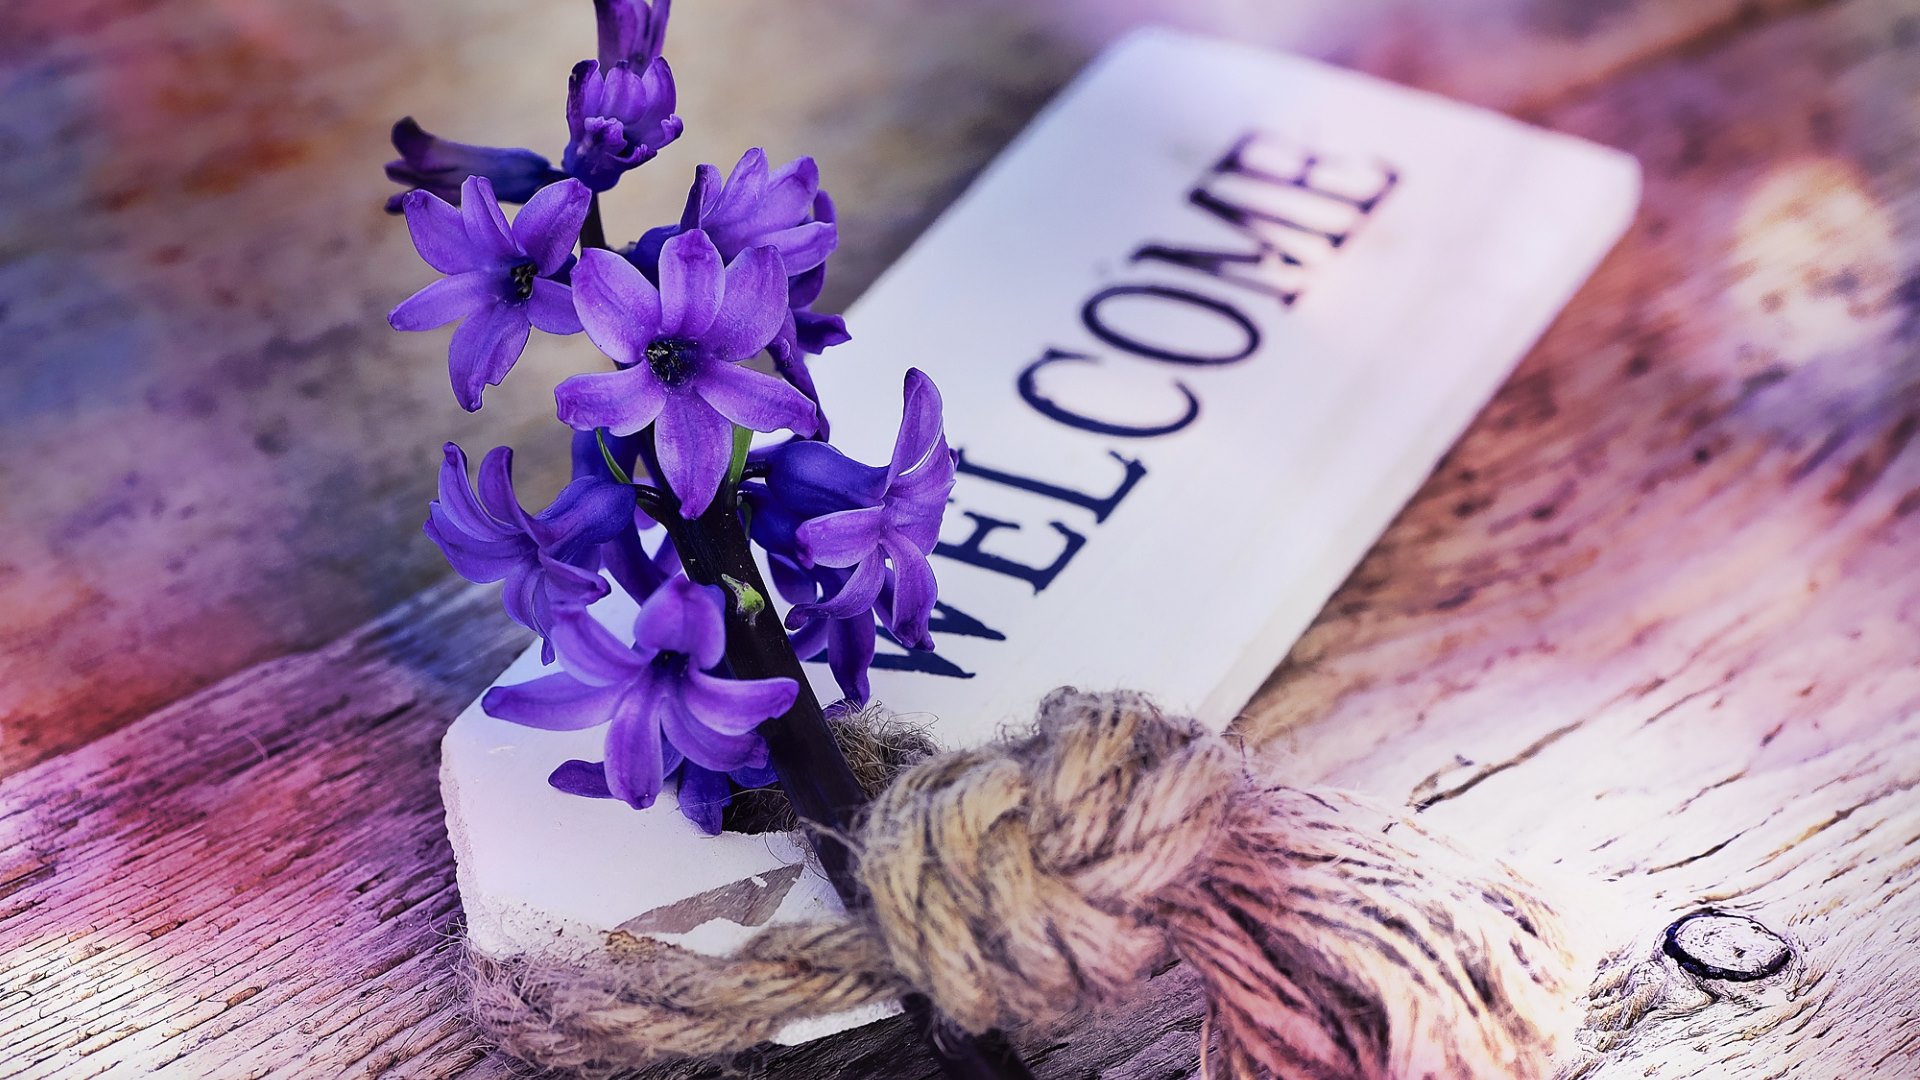 bienvenido fondo de pantalla hd,flor,púrpura,violeta,lavanda,planta